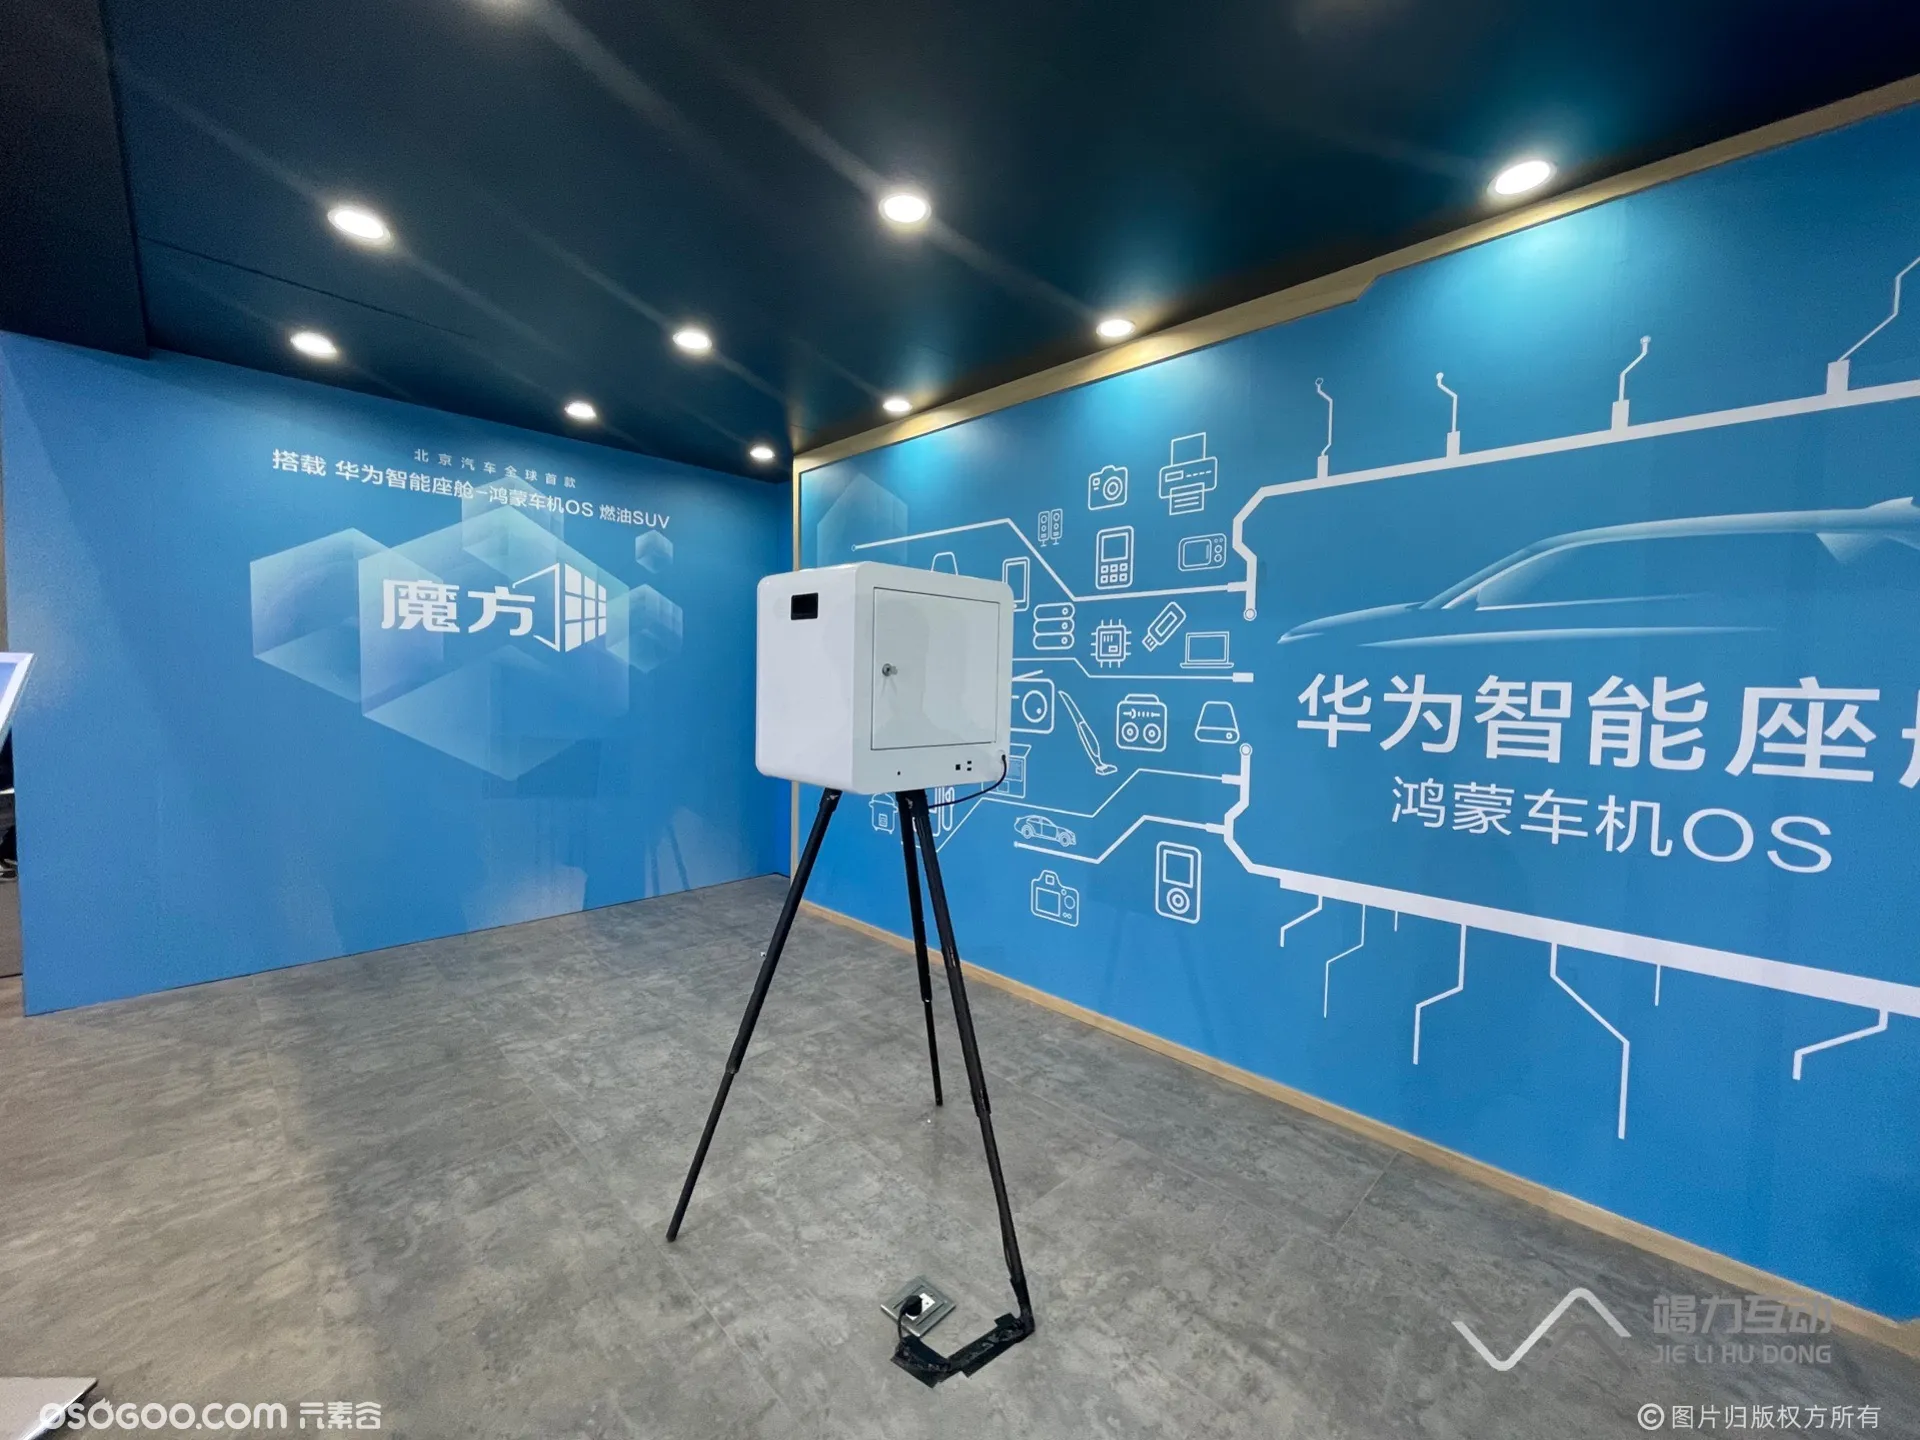 广州国际展览中心广州车展/光绘绘画互动体验装置